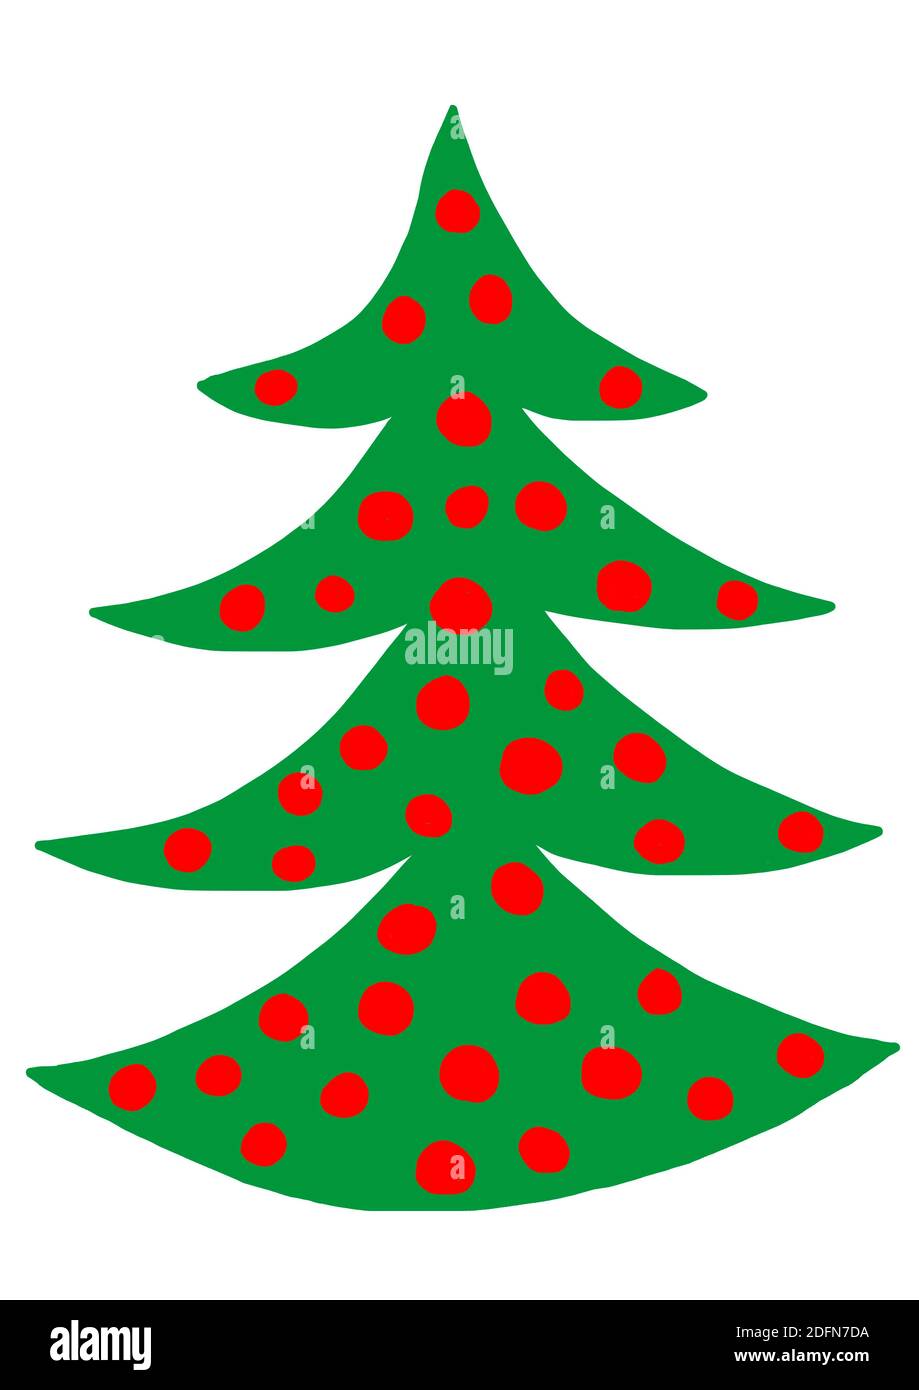 Ilustración ingenua, dibujo infantil, Navidad, árbol de Navidad, Austria Foto de stock